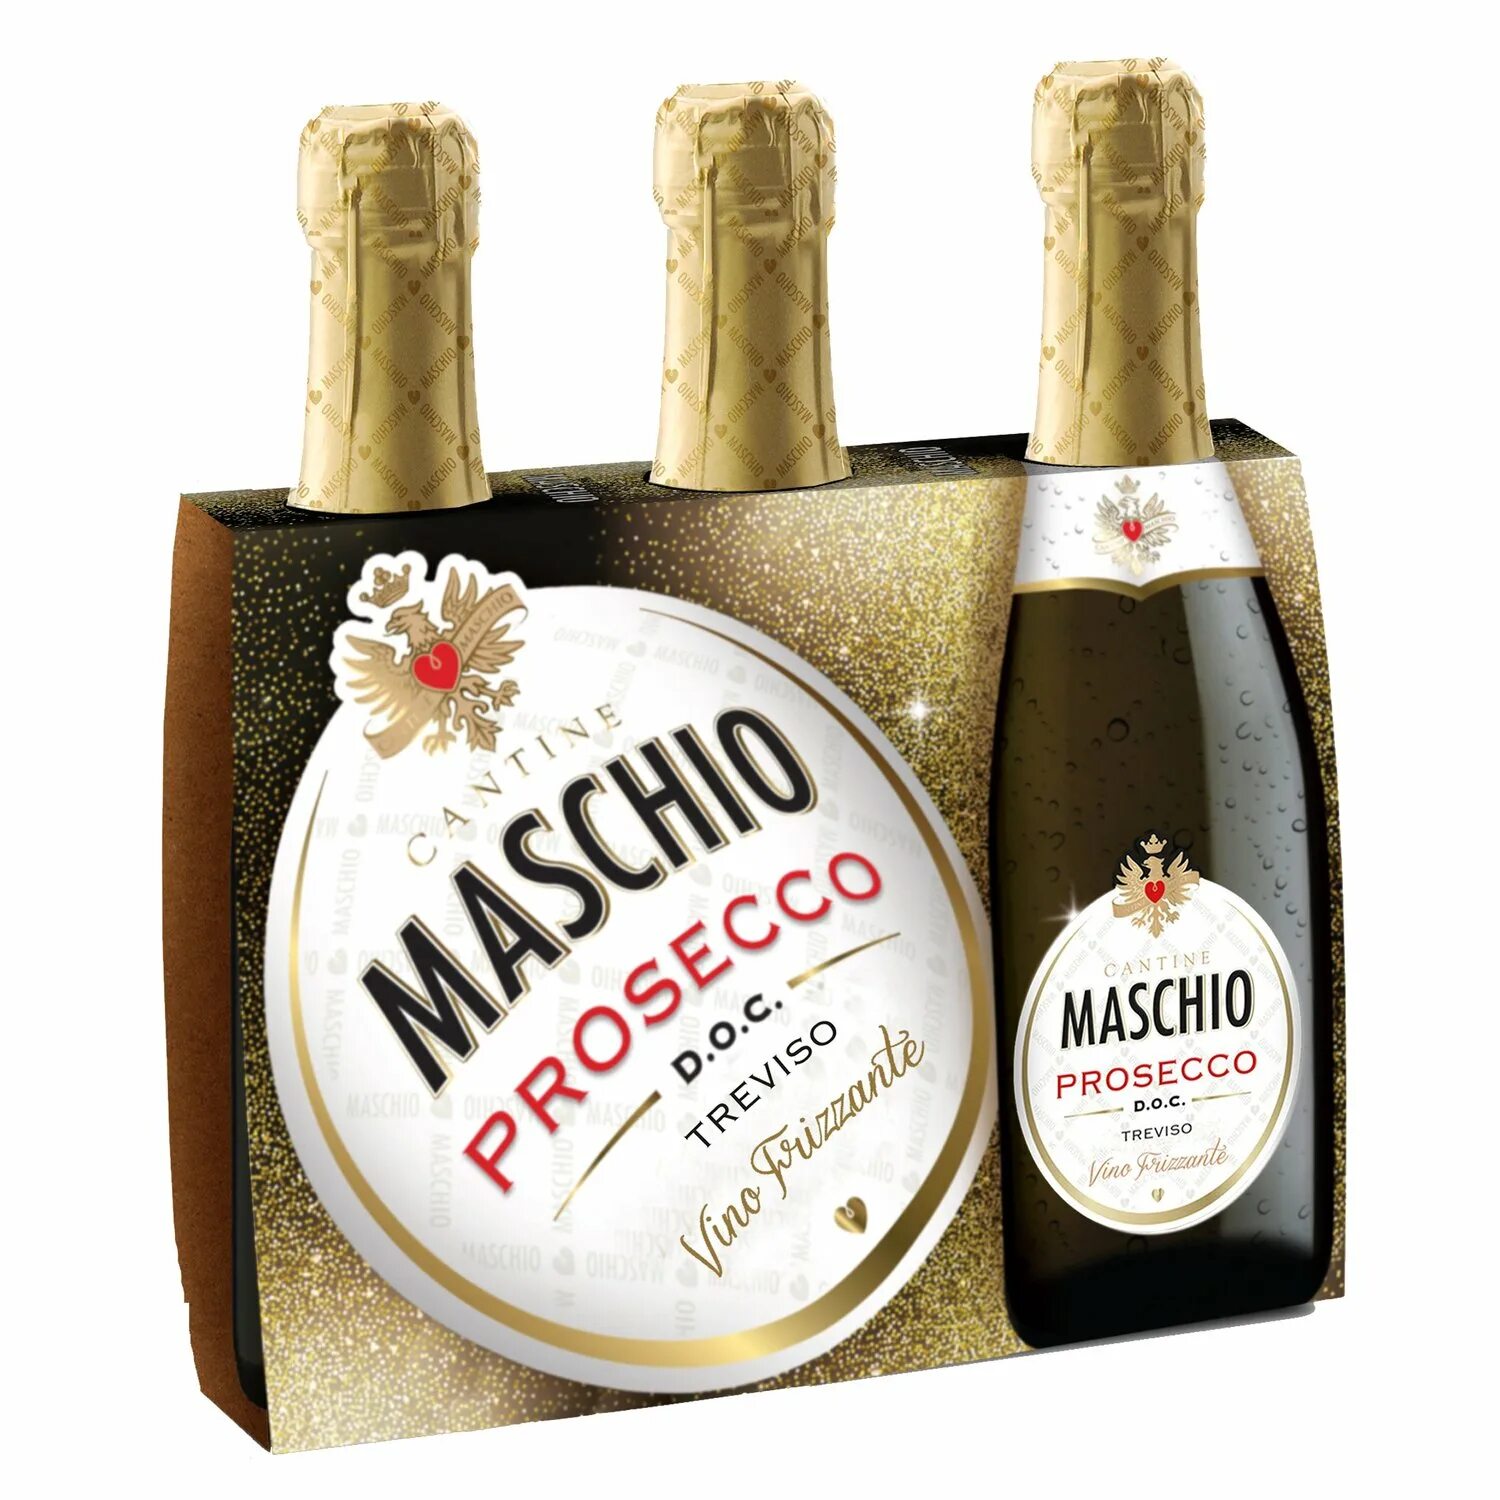 Prosecco treviso купить. Маскио Просекко Тревизо. Maschio Prosecco шампанское Treviso. Маскио Просекко Тревизо Экстра драй. Маскио Просекко этикетка.